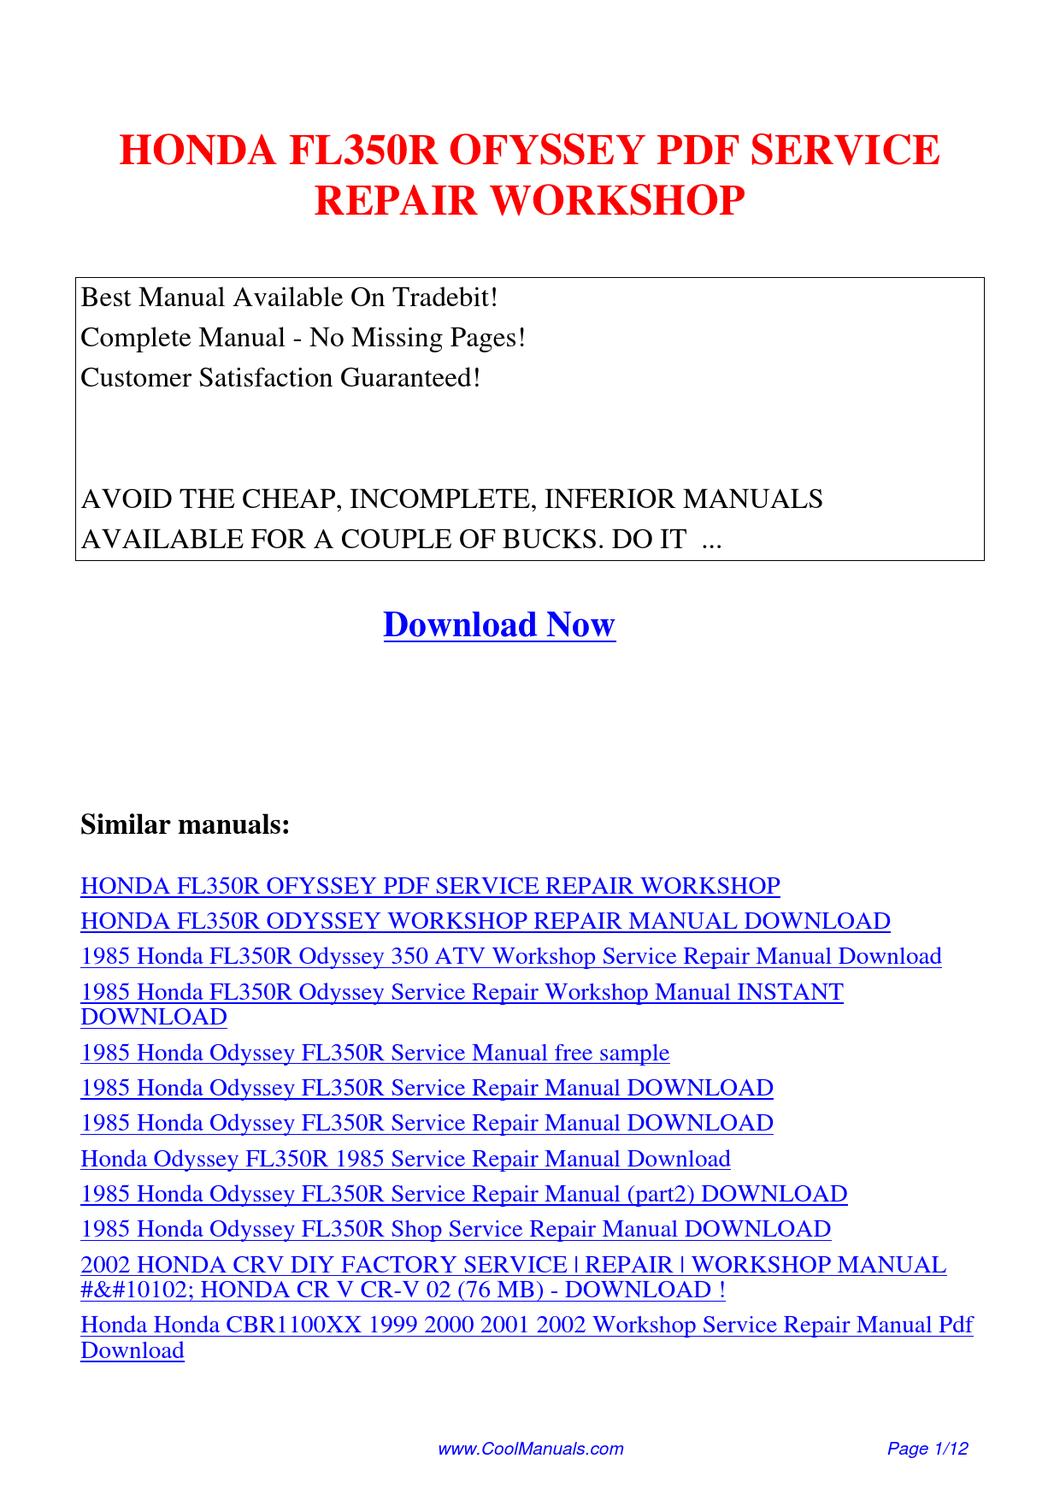 2002 honda odyssey repair manual pdf free